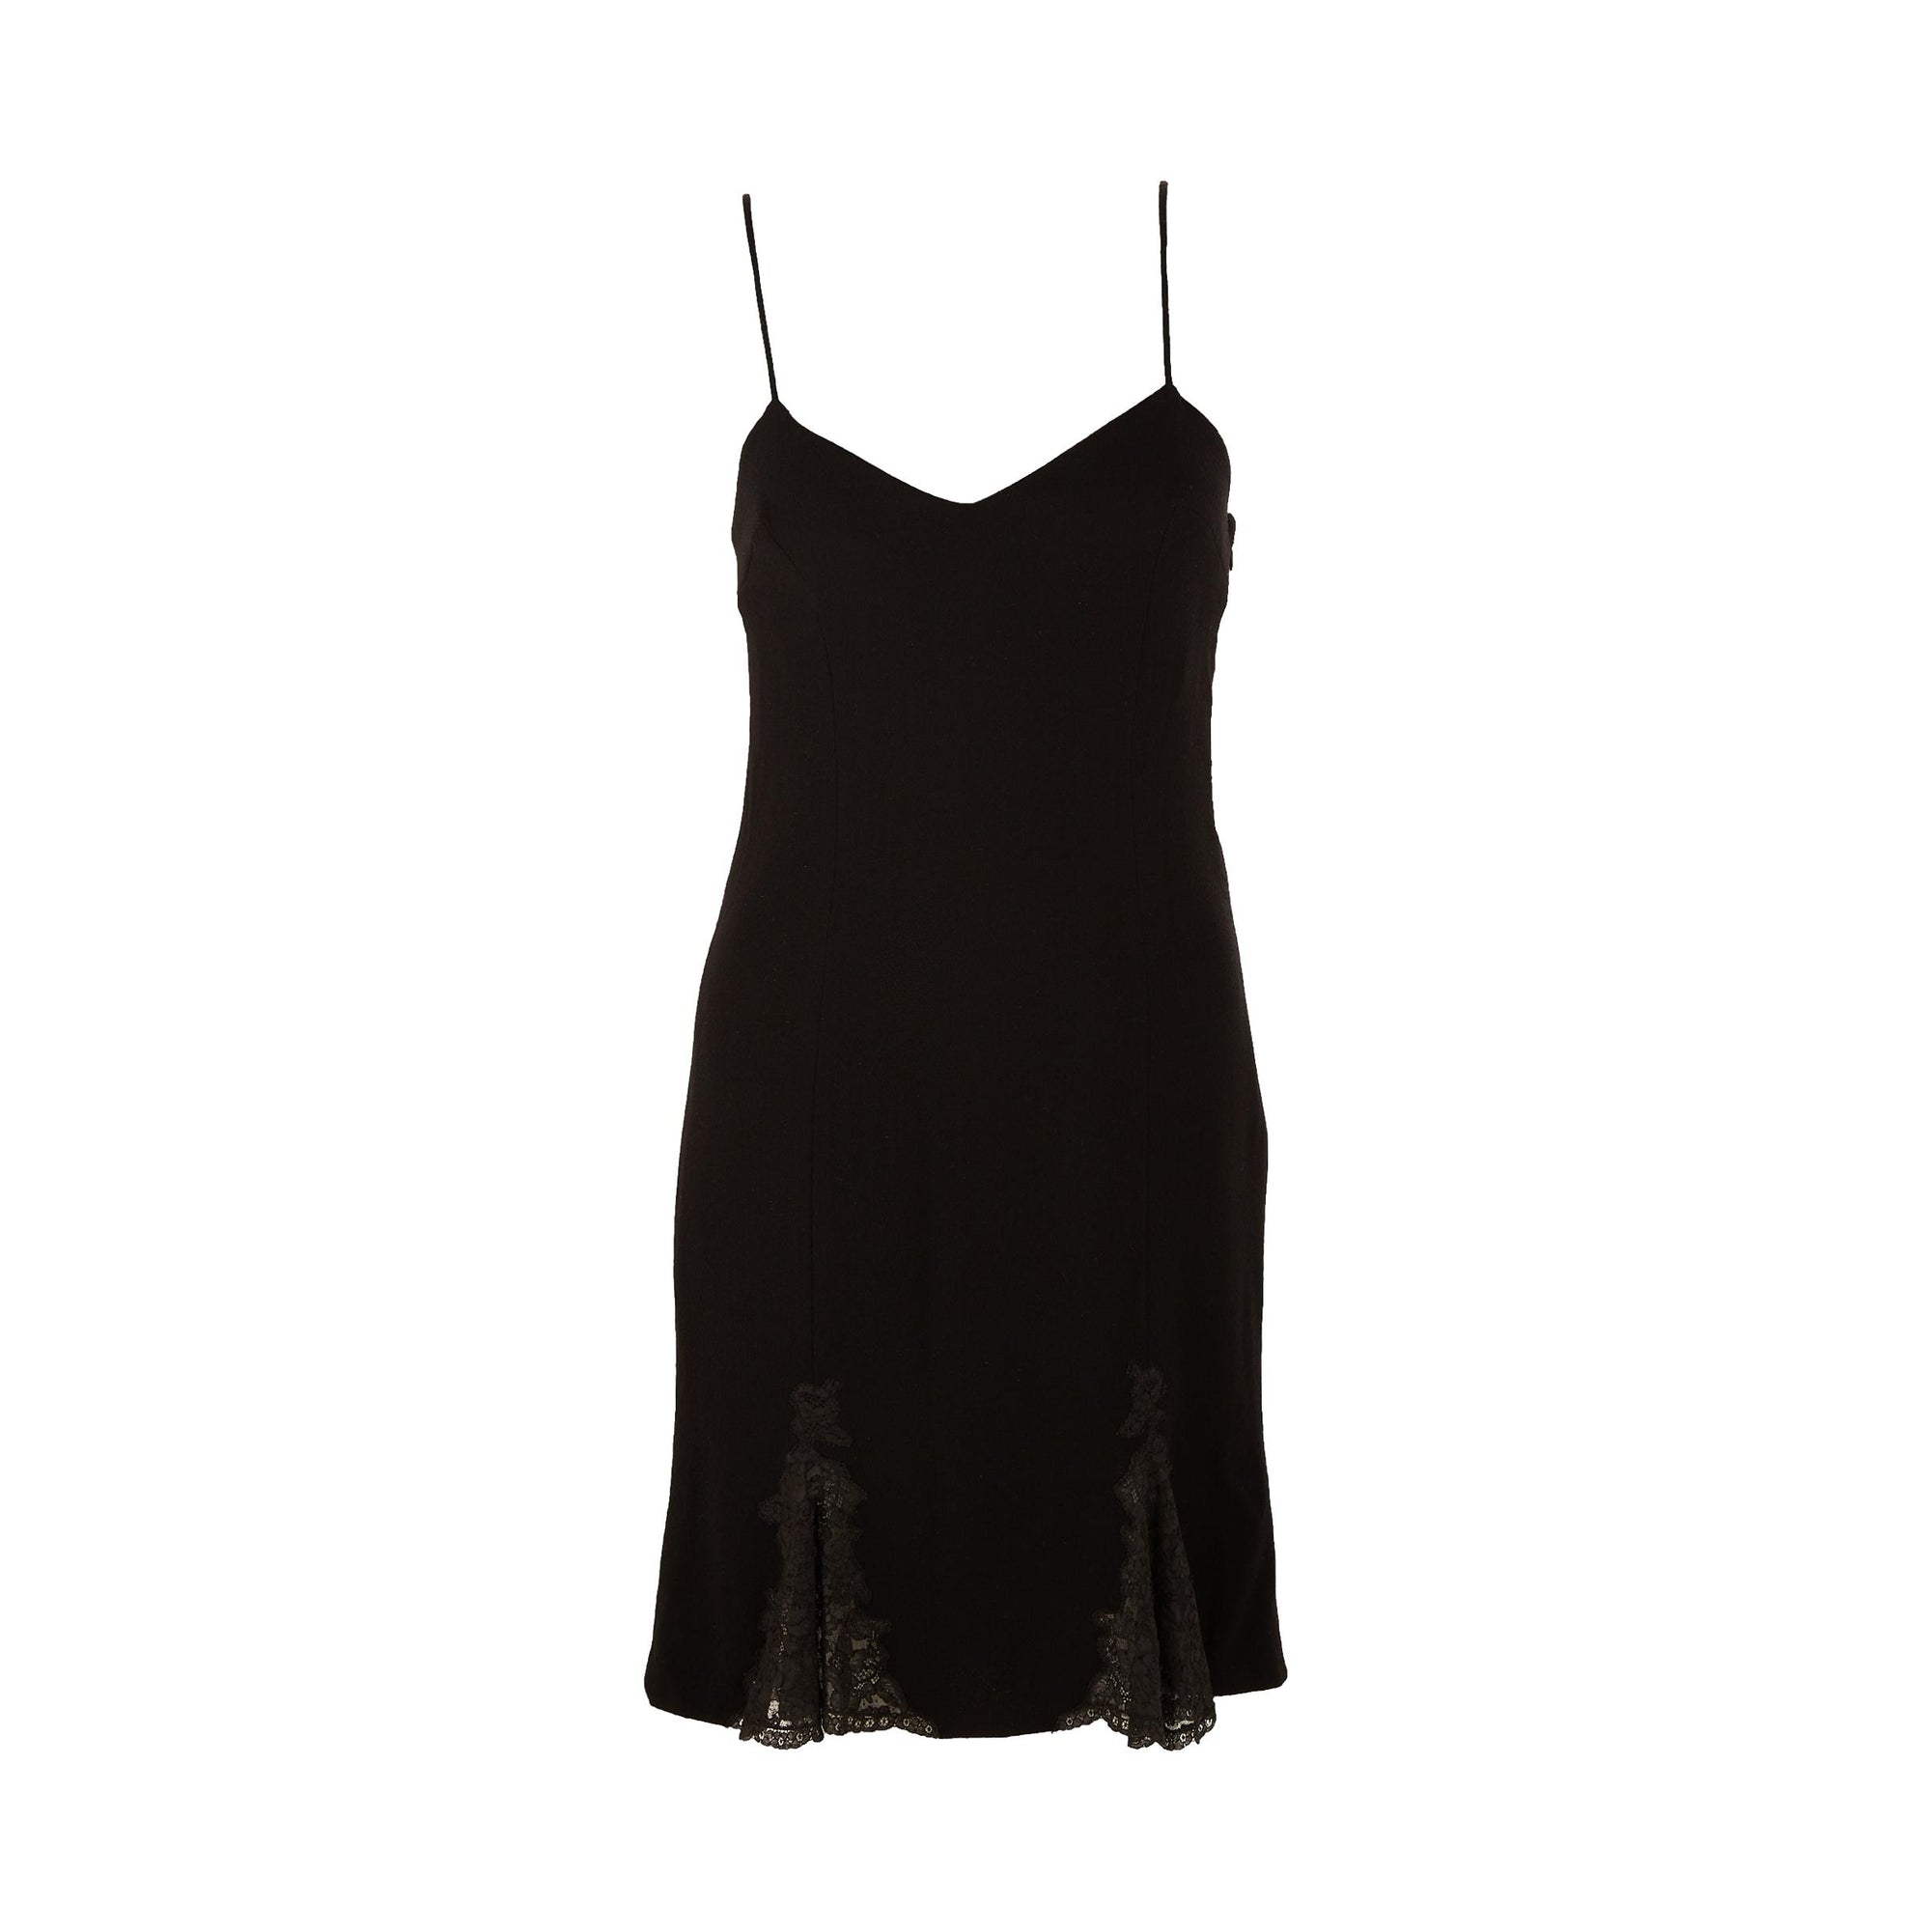 Dior Black Floral Lace Dress